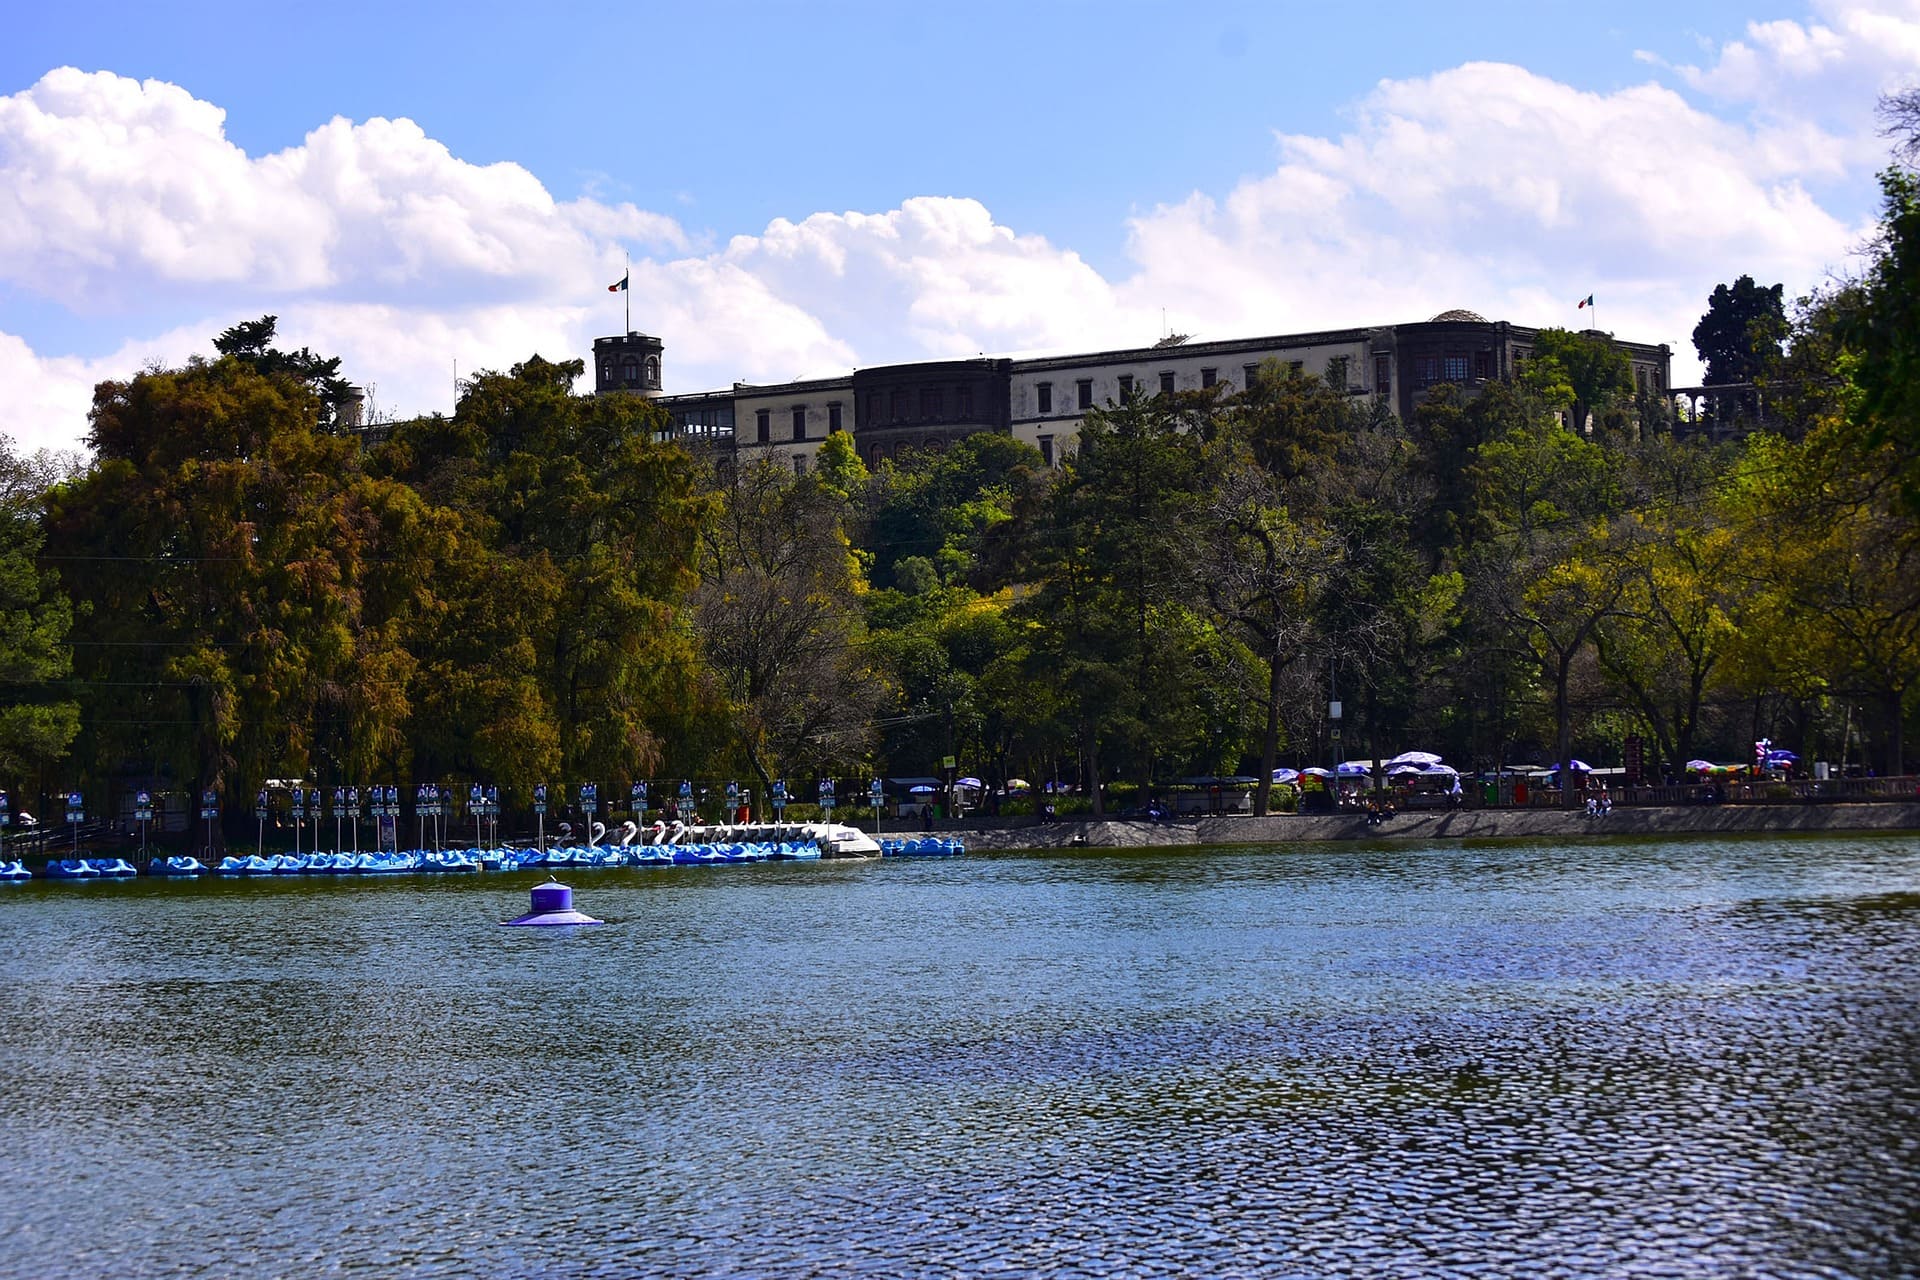 Lago de Chapultepec